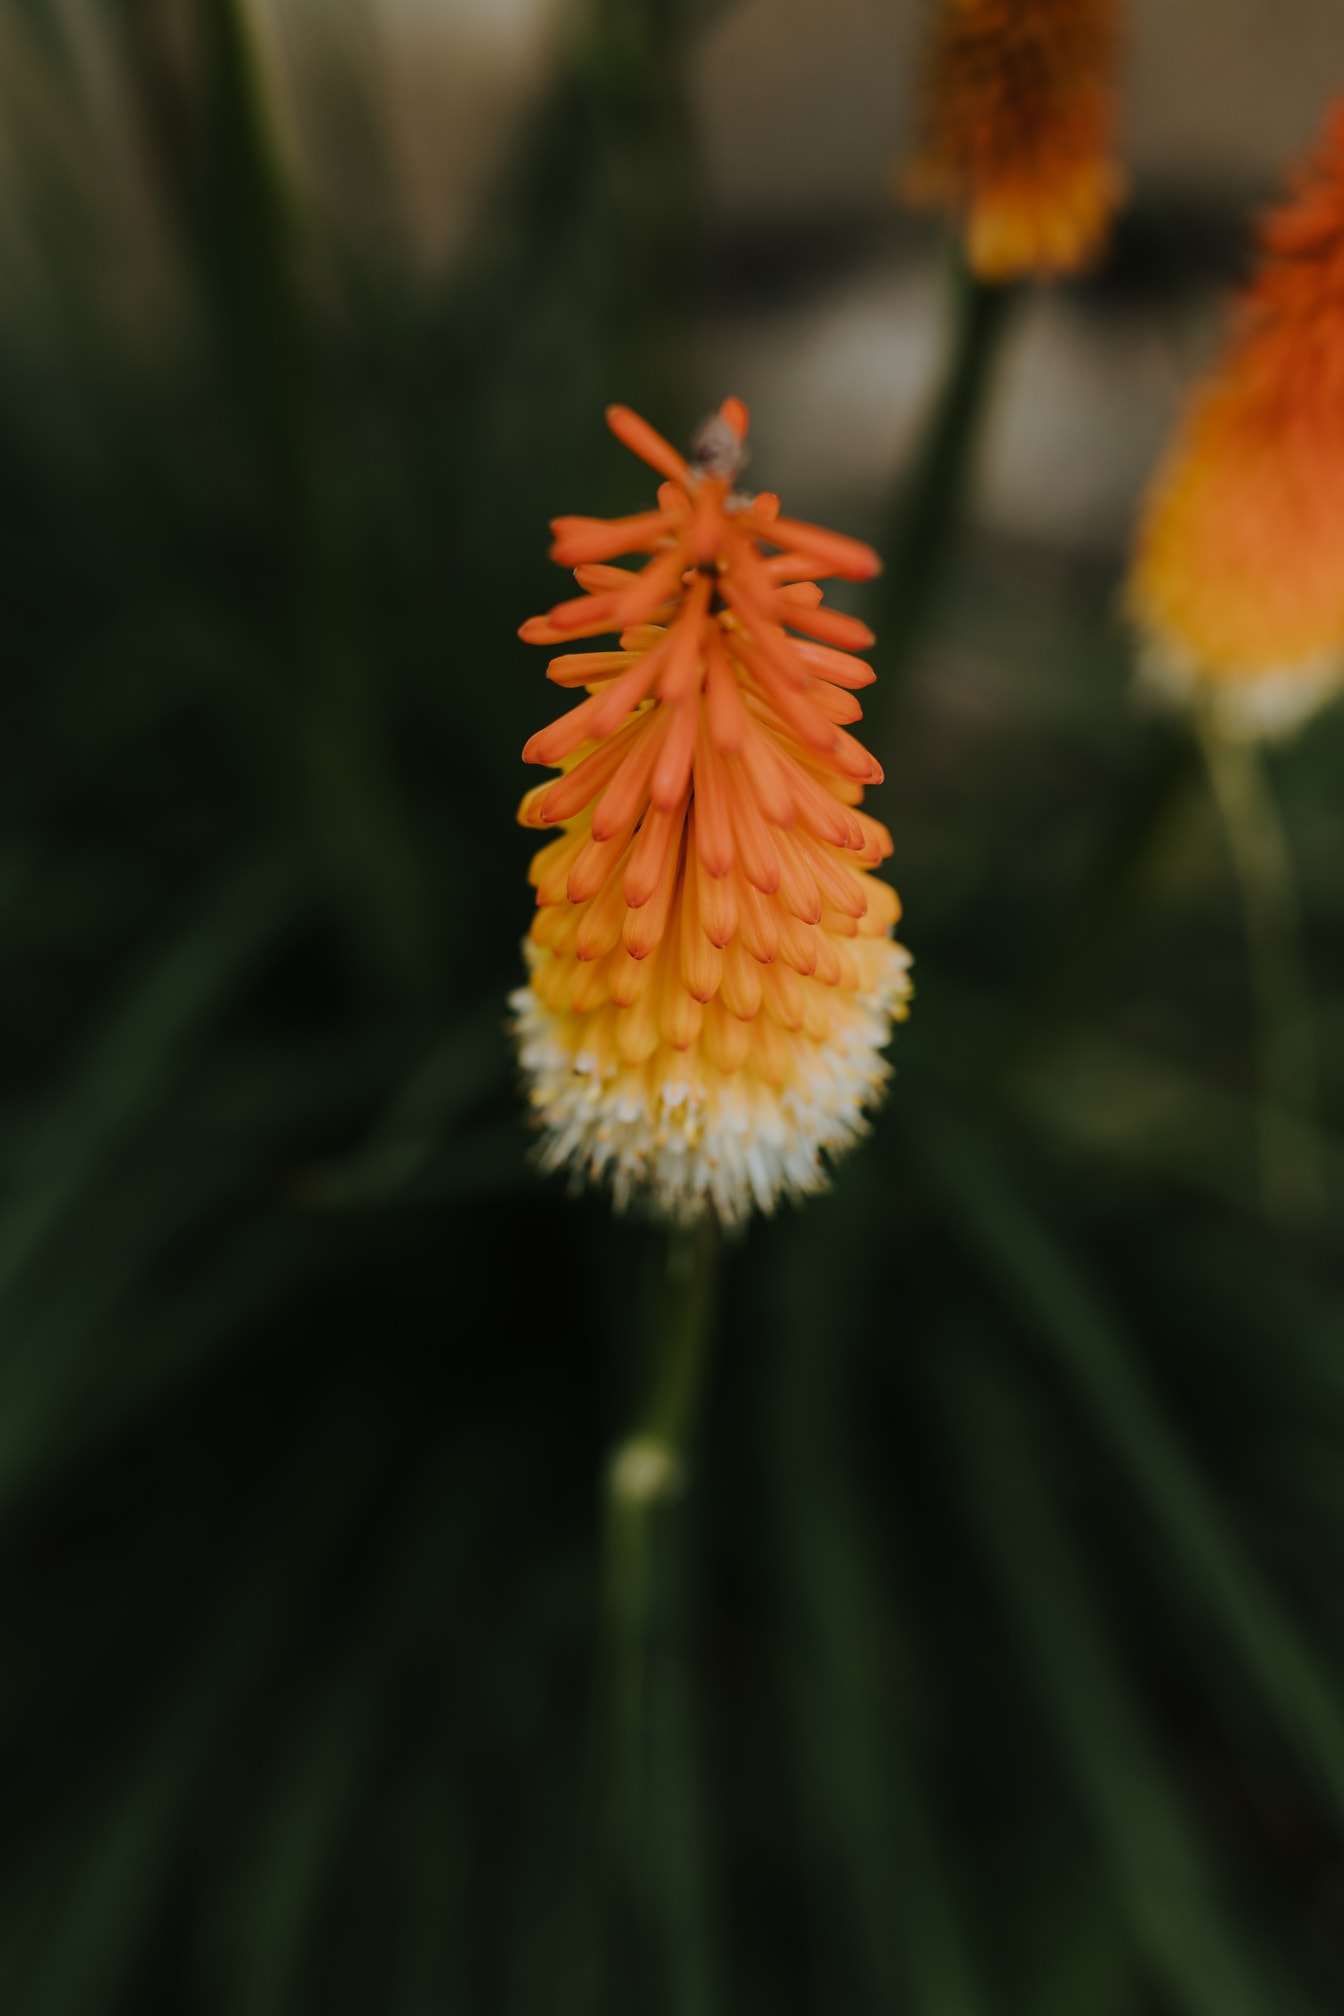 Rozgrzany do czerwoności pogrzebacz lub pochodnia lilia pomarańczowo-żółty kwiat (Kniphofia uvaria) zbliżenie